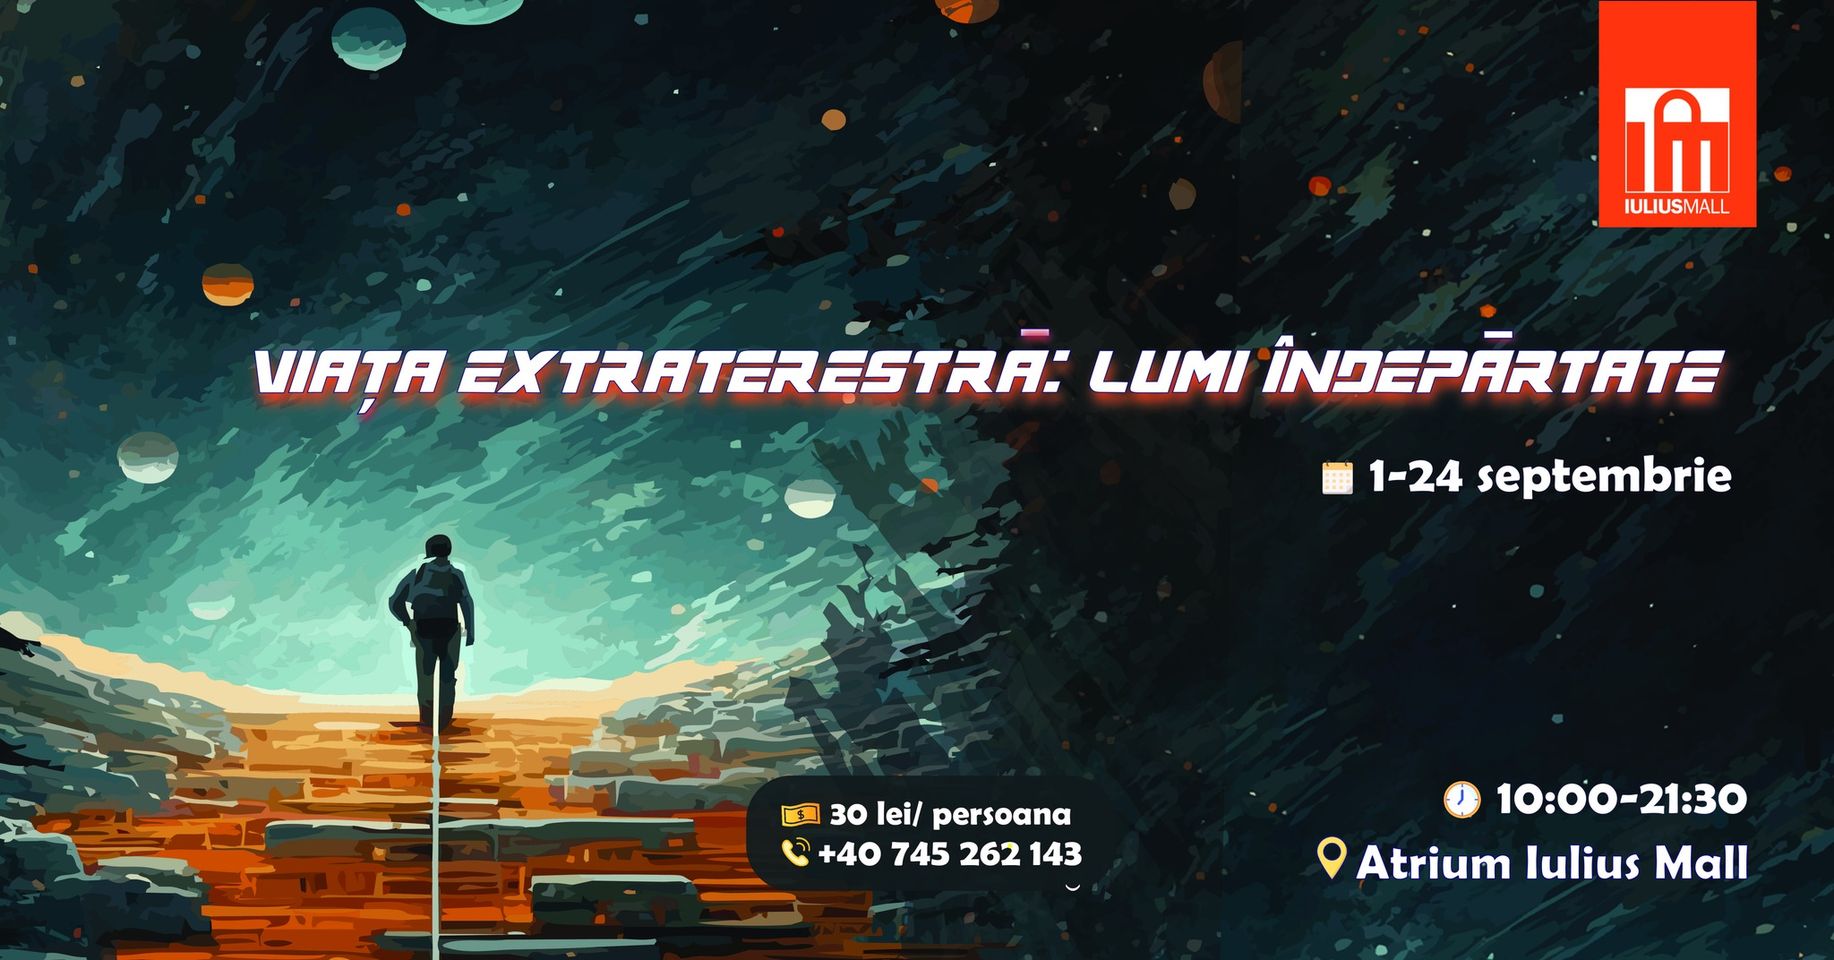 Planetariul „Viaţă extraterestră – Lumi îndepărtate” revine în Iulius Mall Cluj, până pe 24 septembrie!